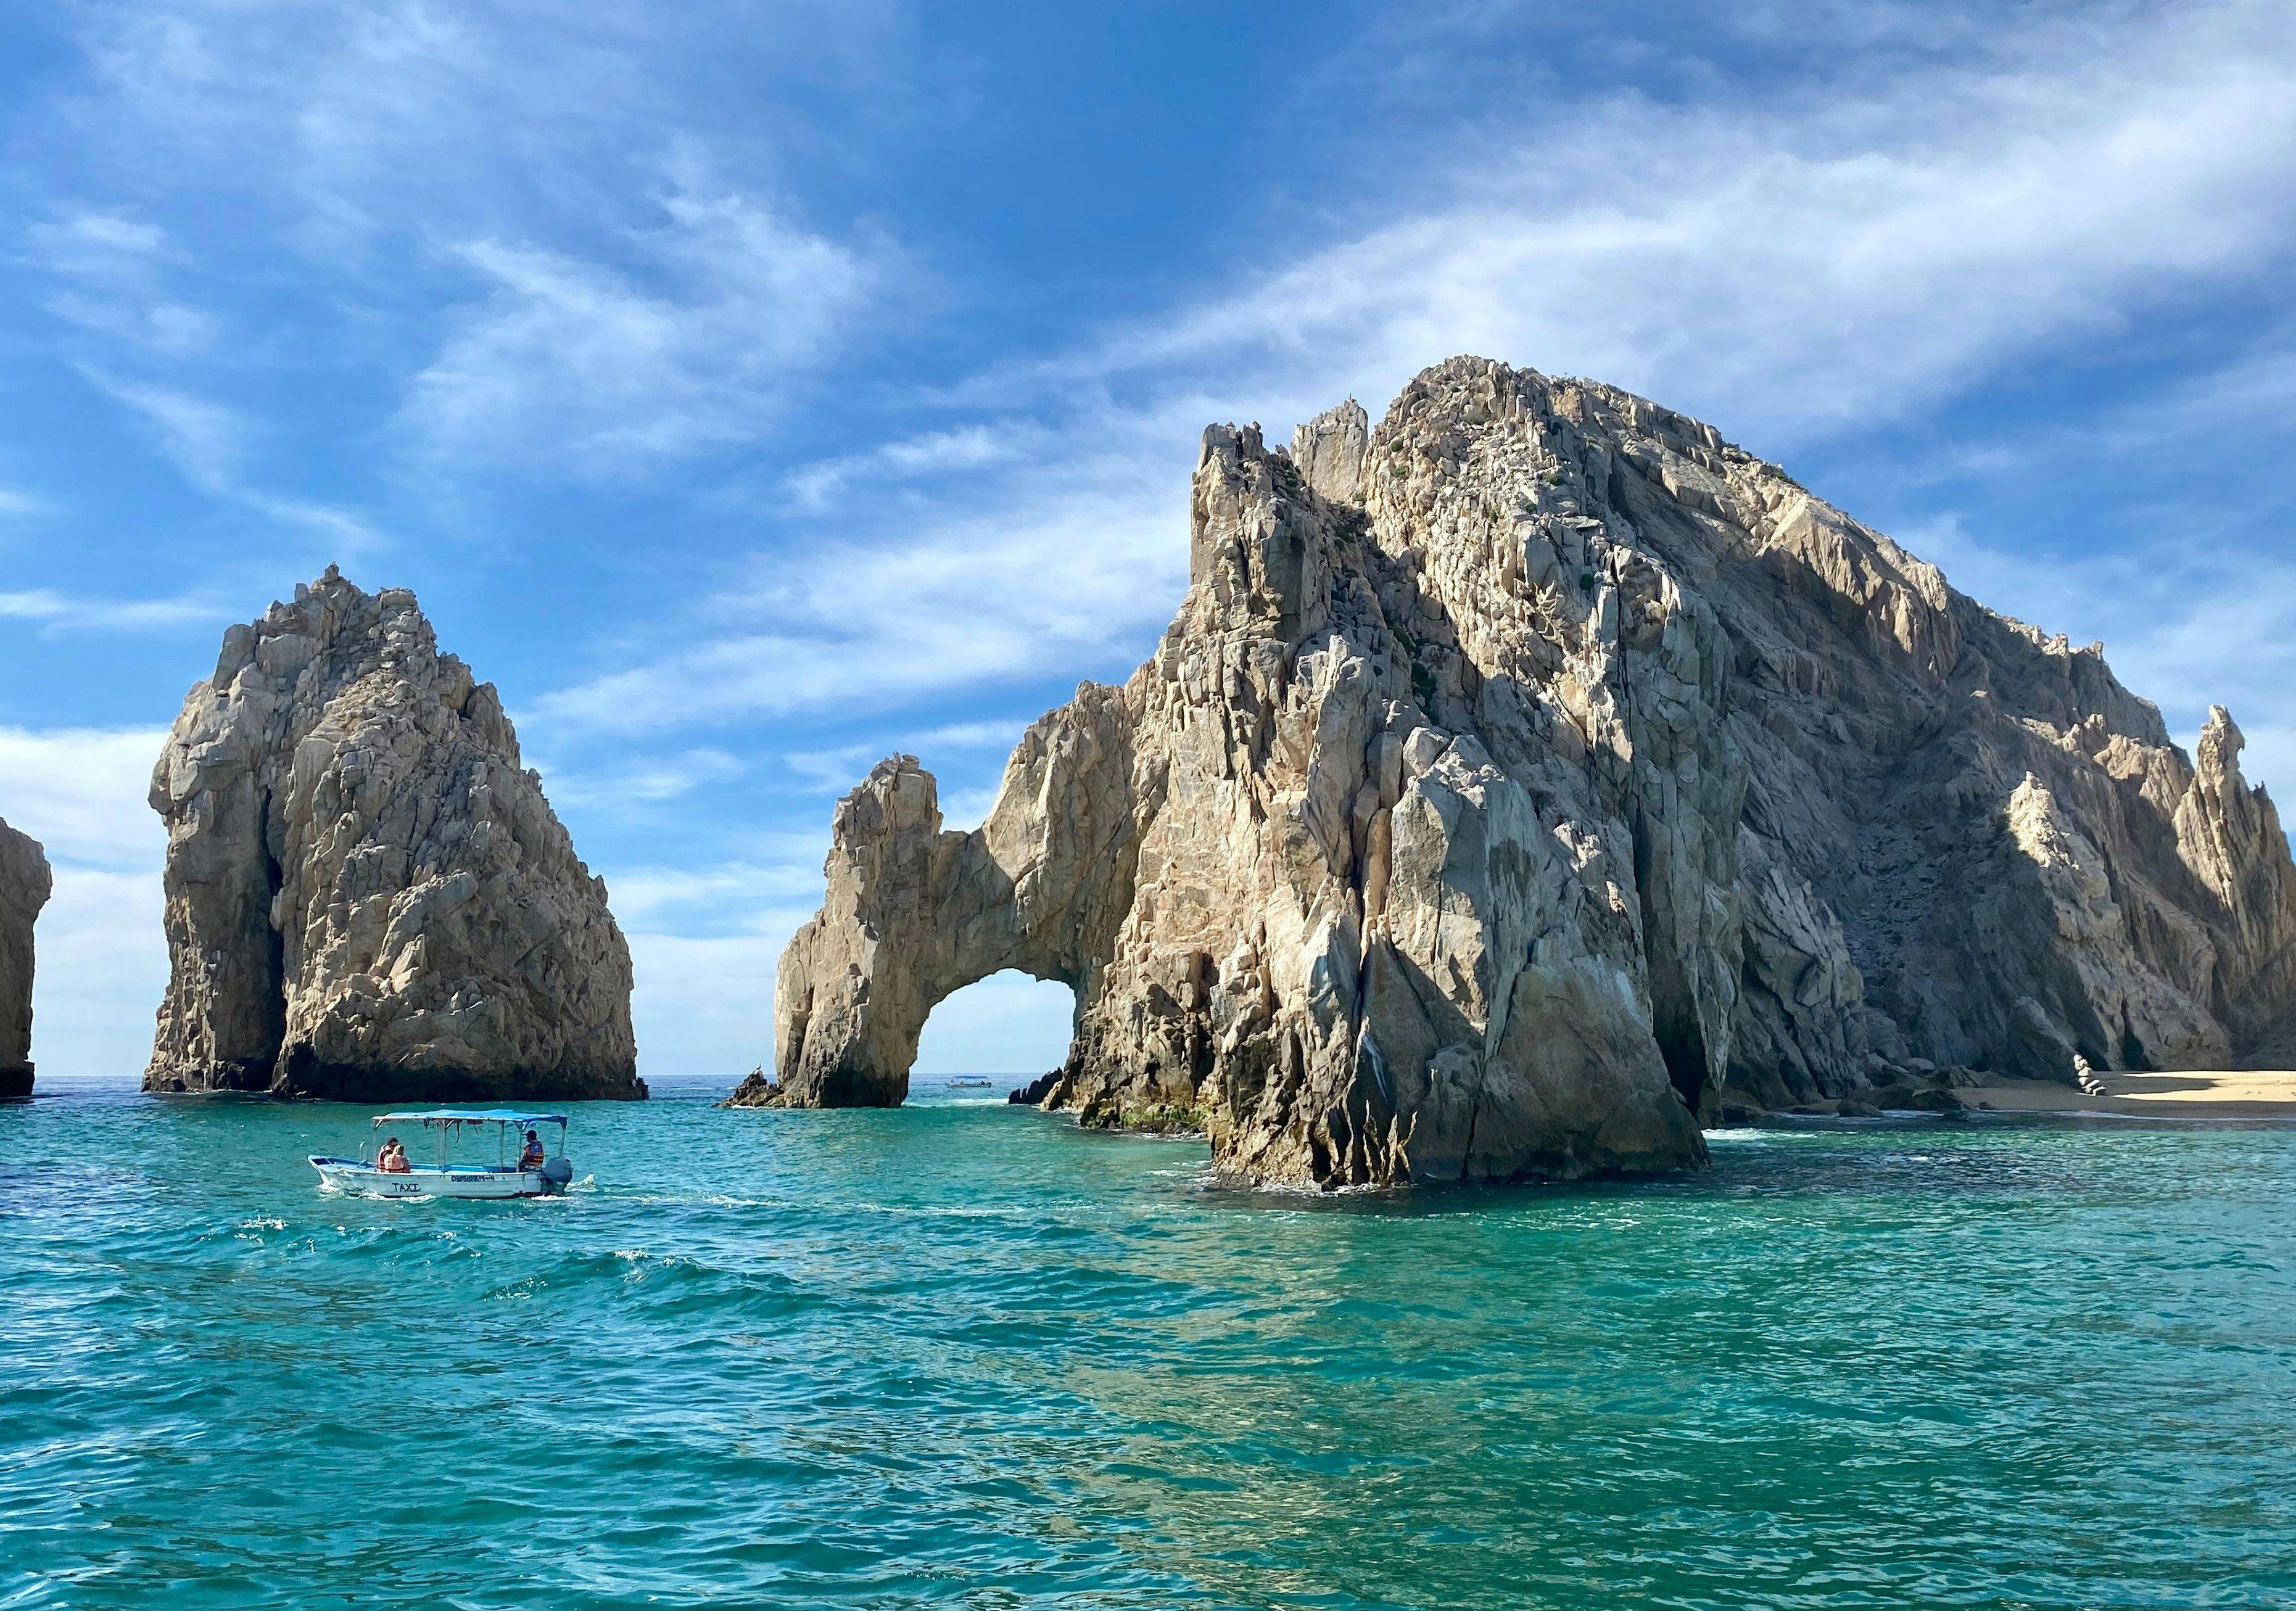 El Arco rocks rocks in the ocean in Cabo Mexico